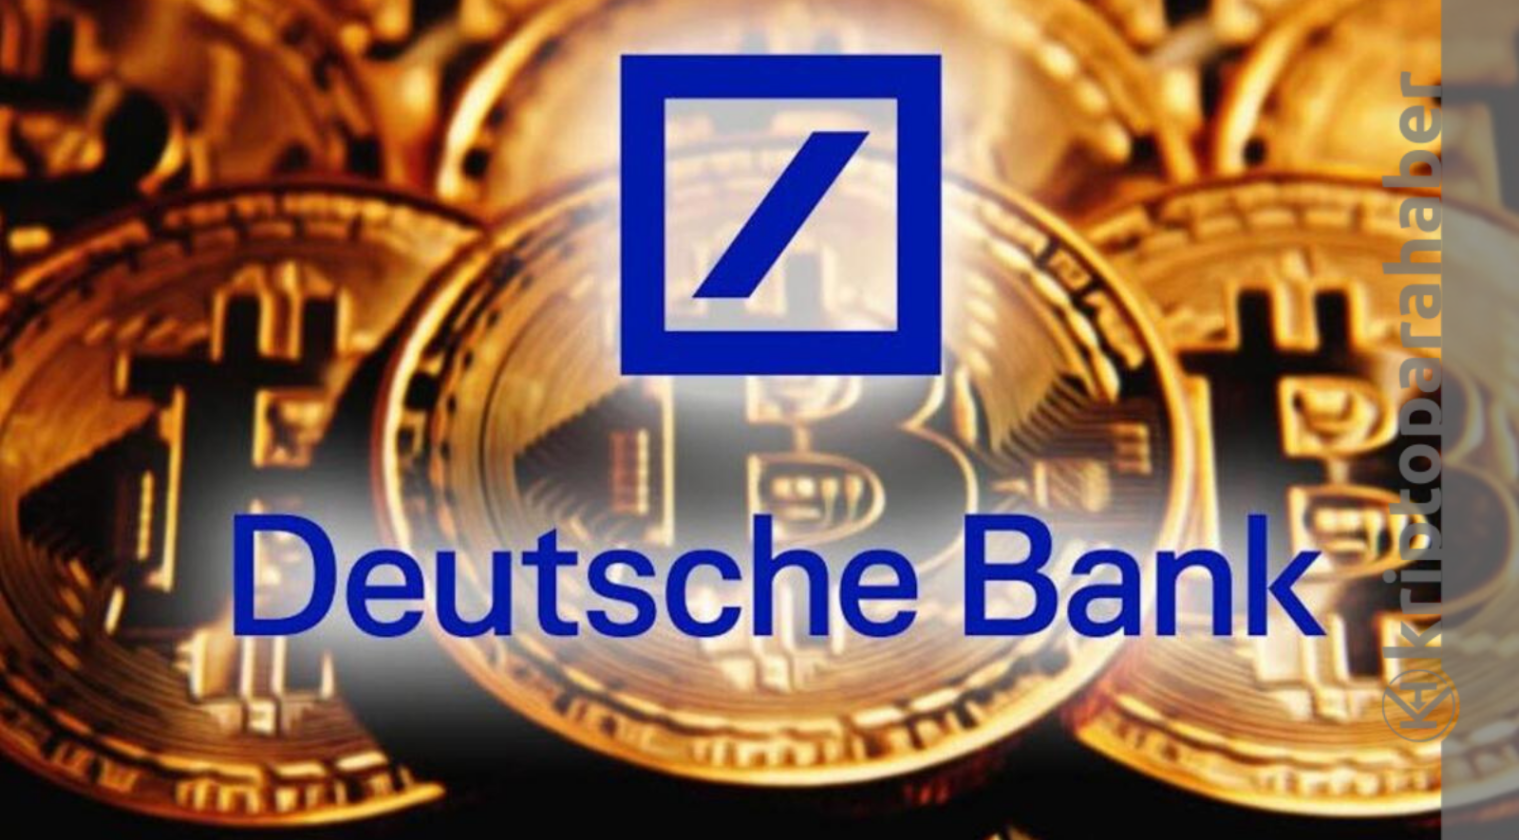 Deutsche Bank: kripto madenciliği 2000 visa işleminden fazla karbon ayak izi üretiyor